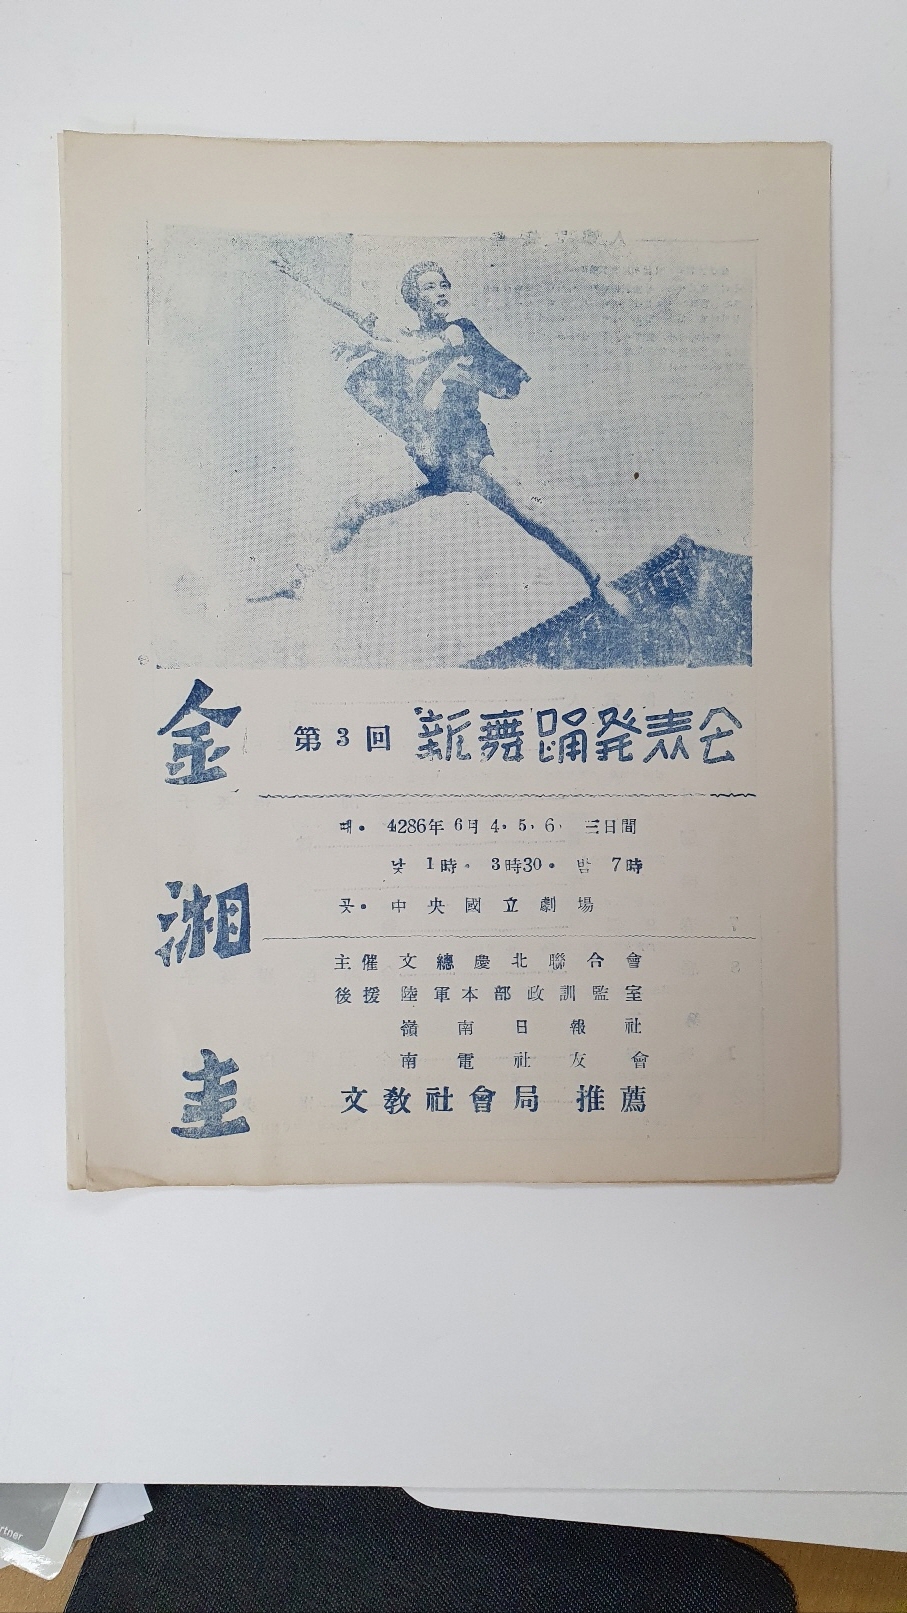 [제3회 김상규(金湘圭) 신무용발표회] 팸플릿, 1953